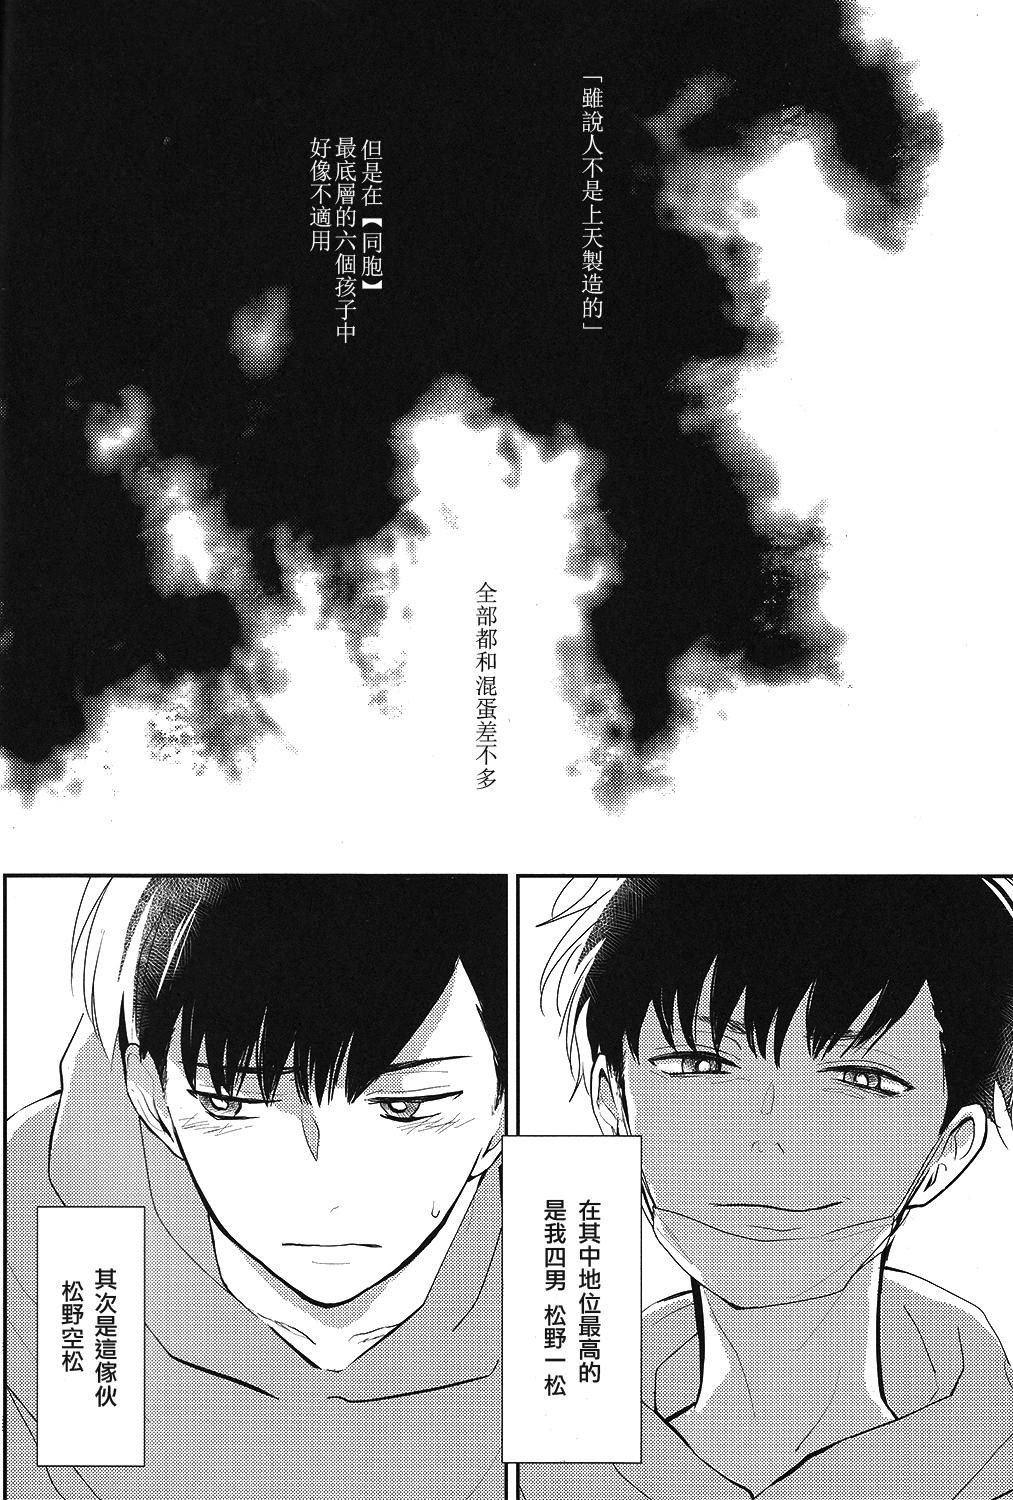 Tease IchiKara no Susume. - Osomatsu-san Cheating - Page 5